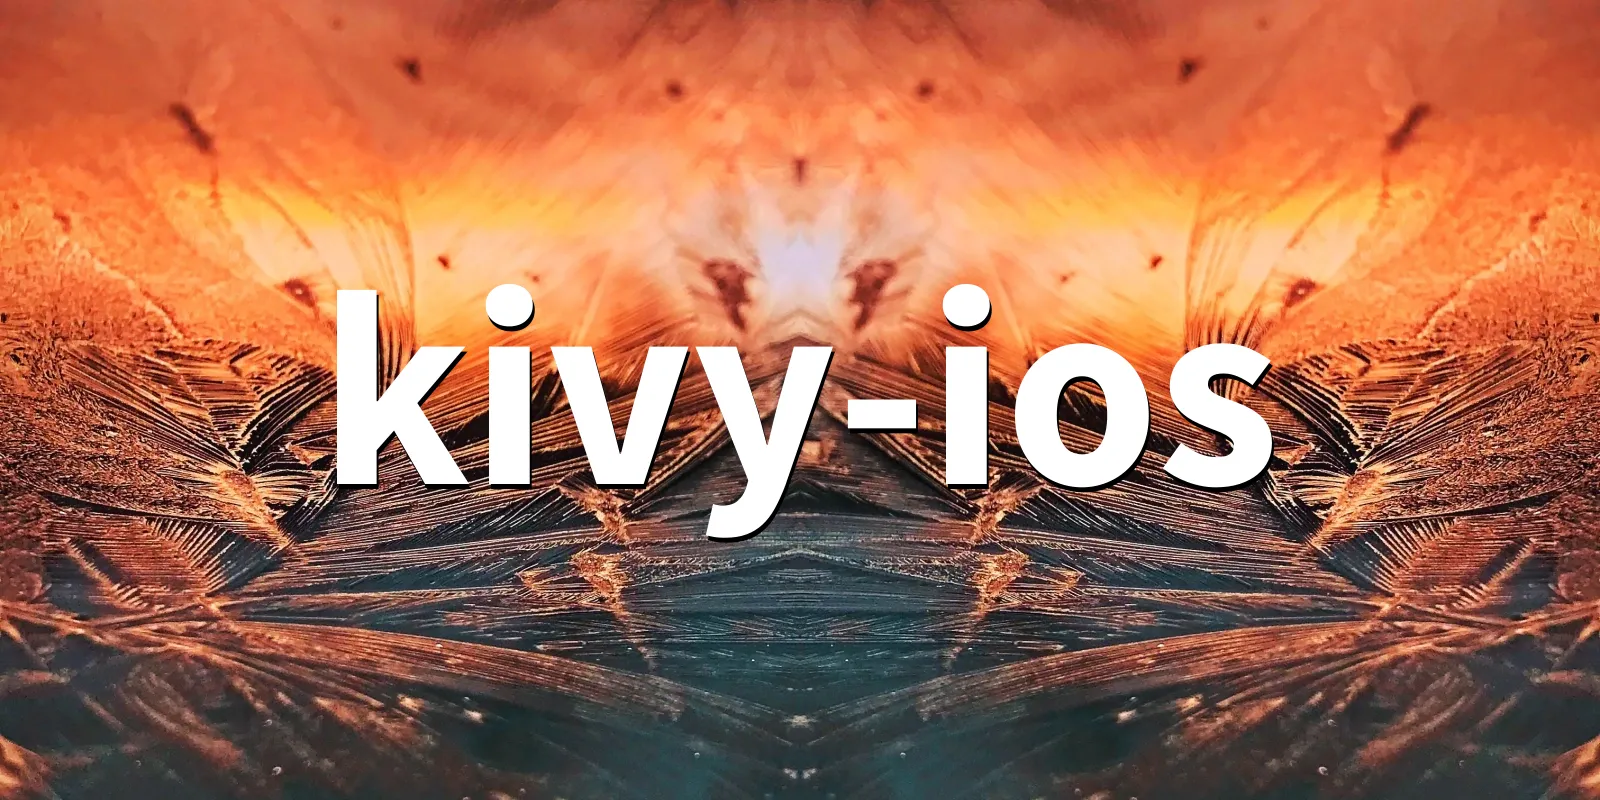 /pkg/k/kivy-ios/kivy-ios-banner.webp